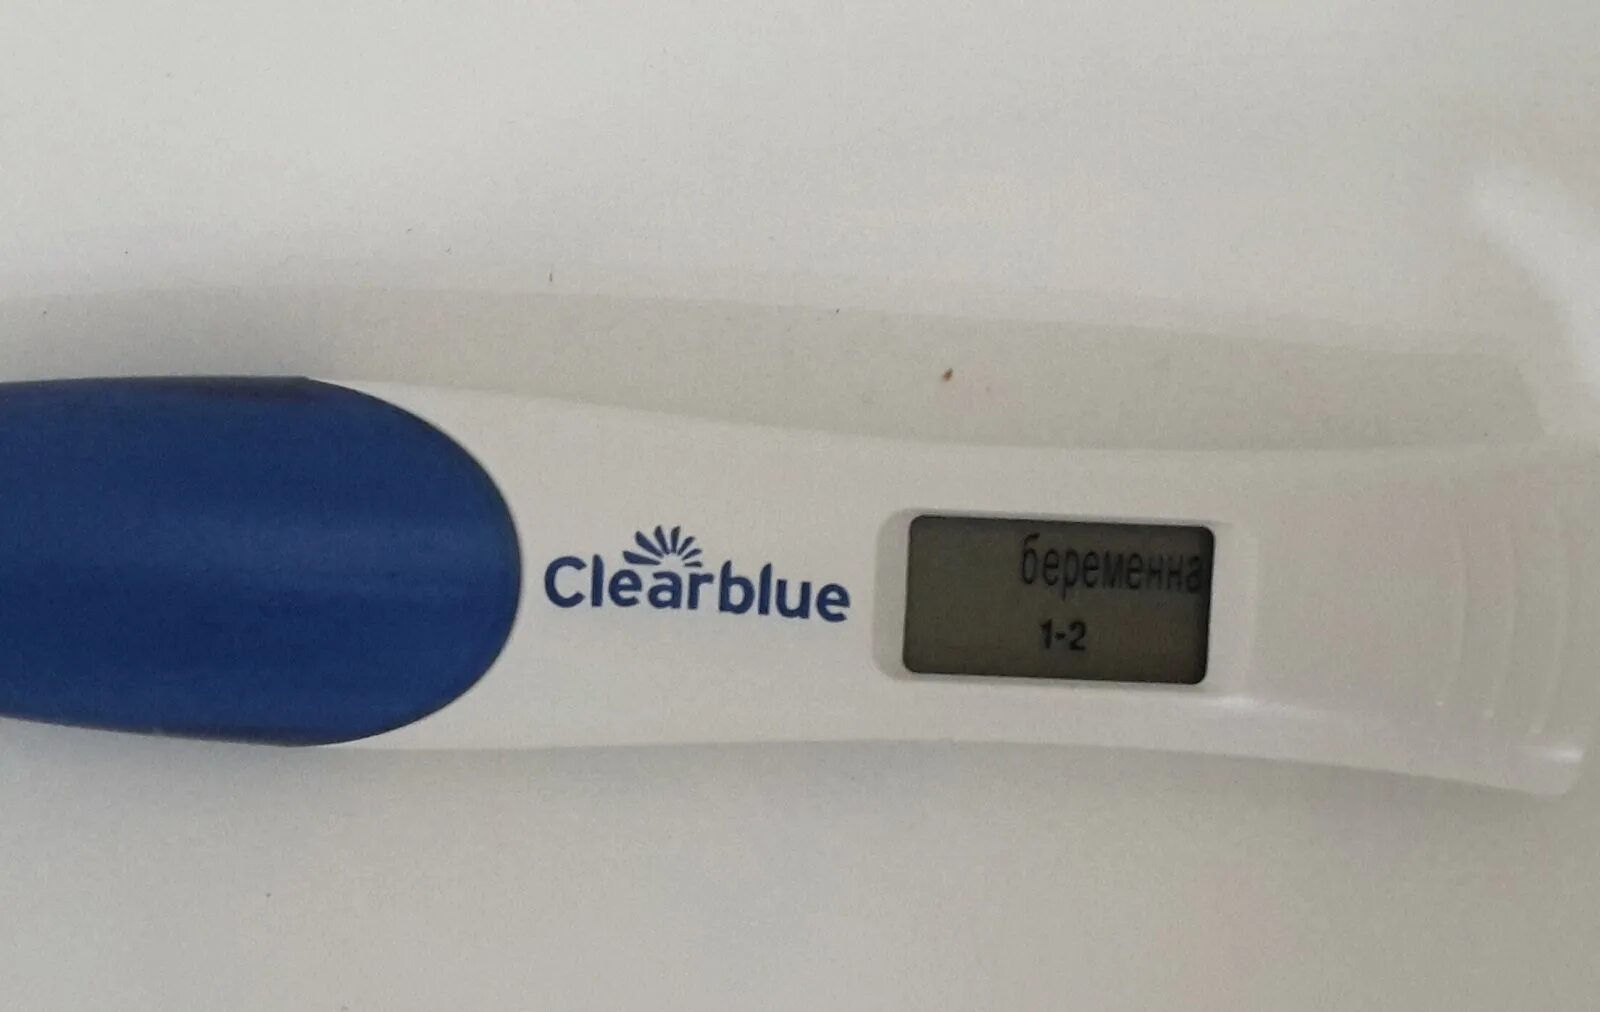 1 Цифровой тест на беременность. Электронный тест на беременность 1-2 недели беременности. Электронный тест на беременность 1 неделя беременности. Clearblue 1-2 недели. На электронном тесте 3